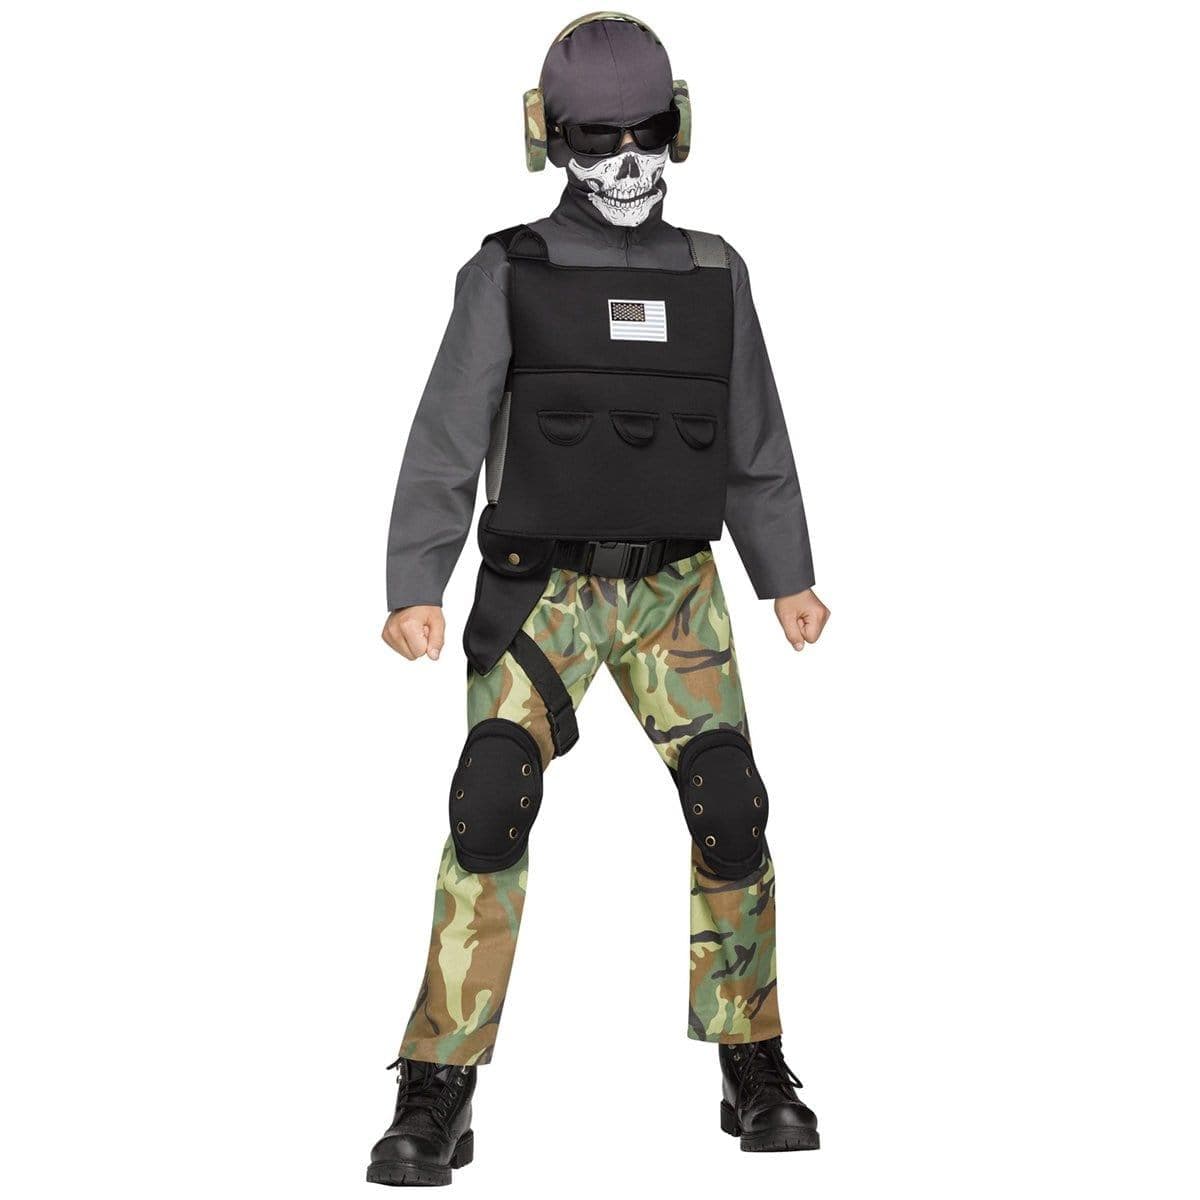 Skull Soldier Costume for Kids